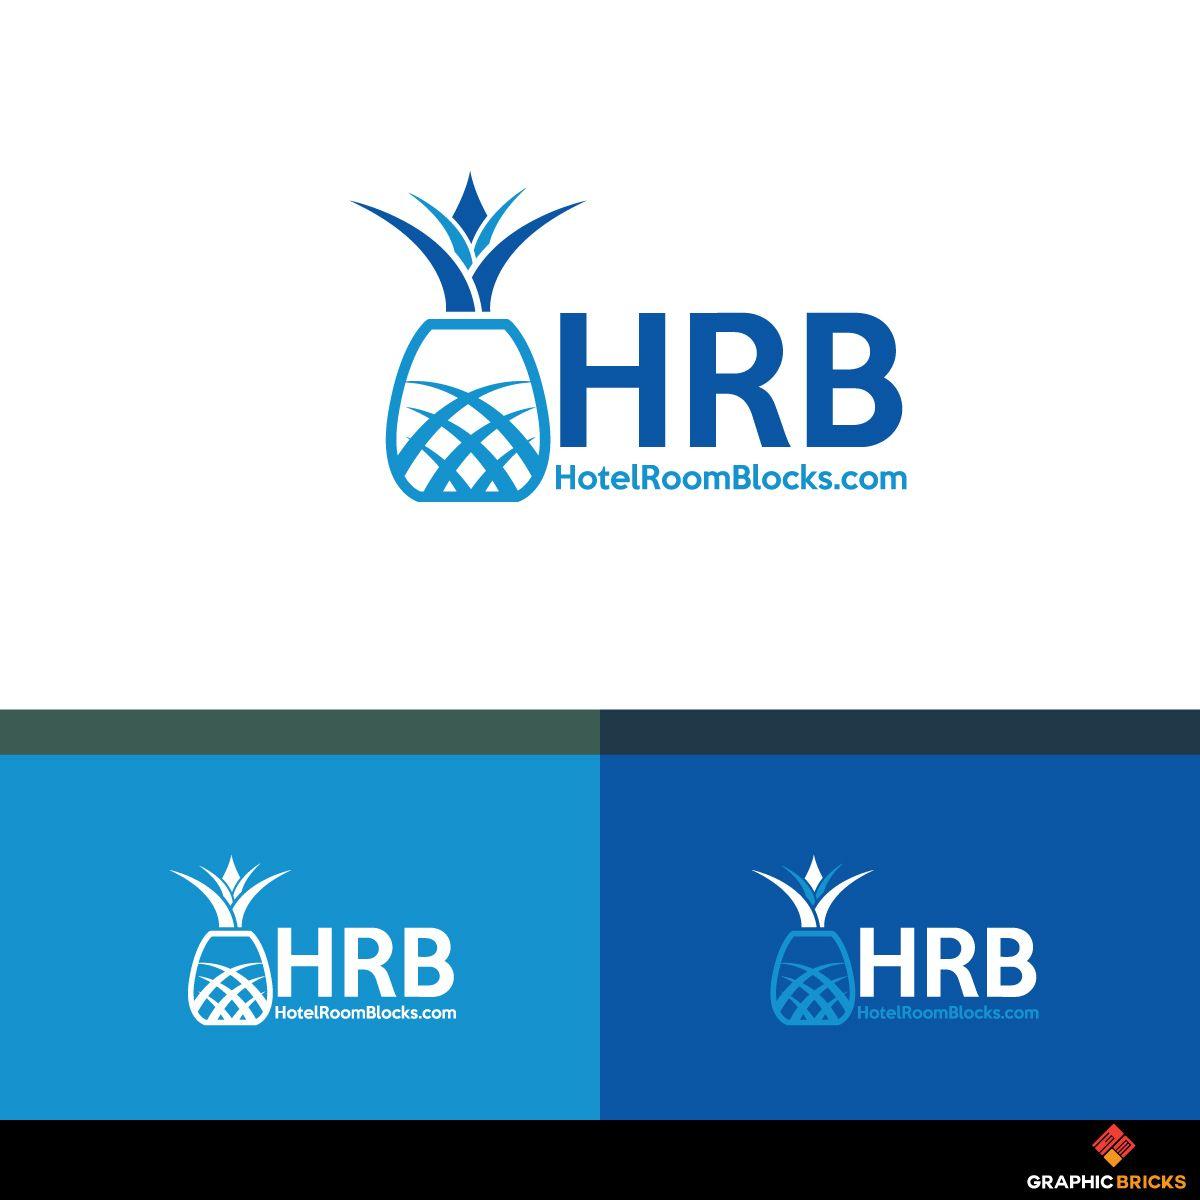 HRB Logo - Modern, Elegant, Travel Industry Logo Design for HRB HotelRoomBlocks ...